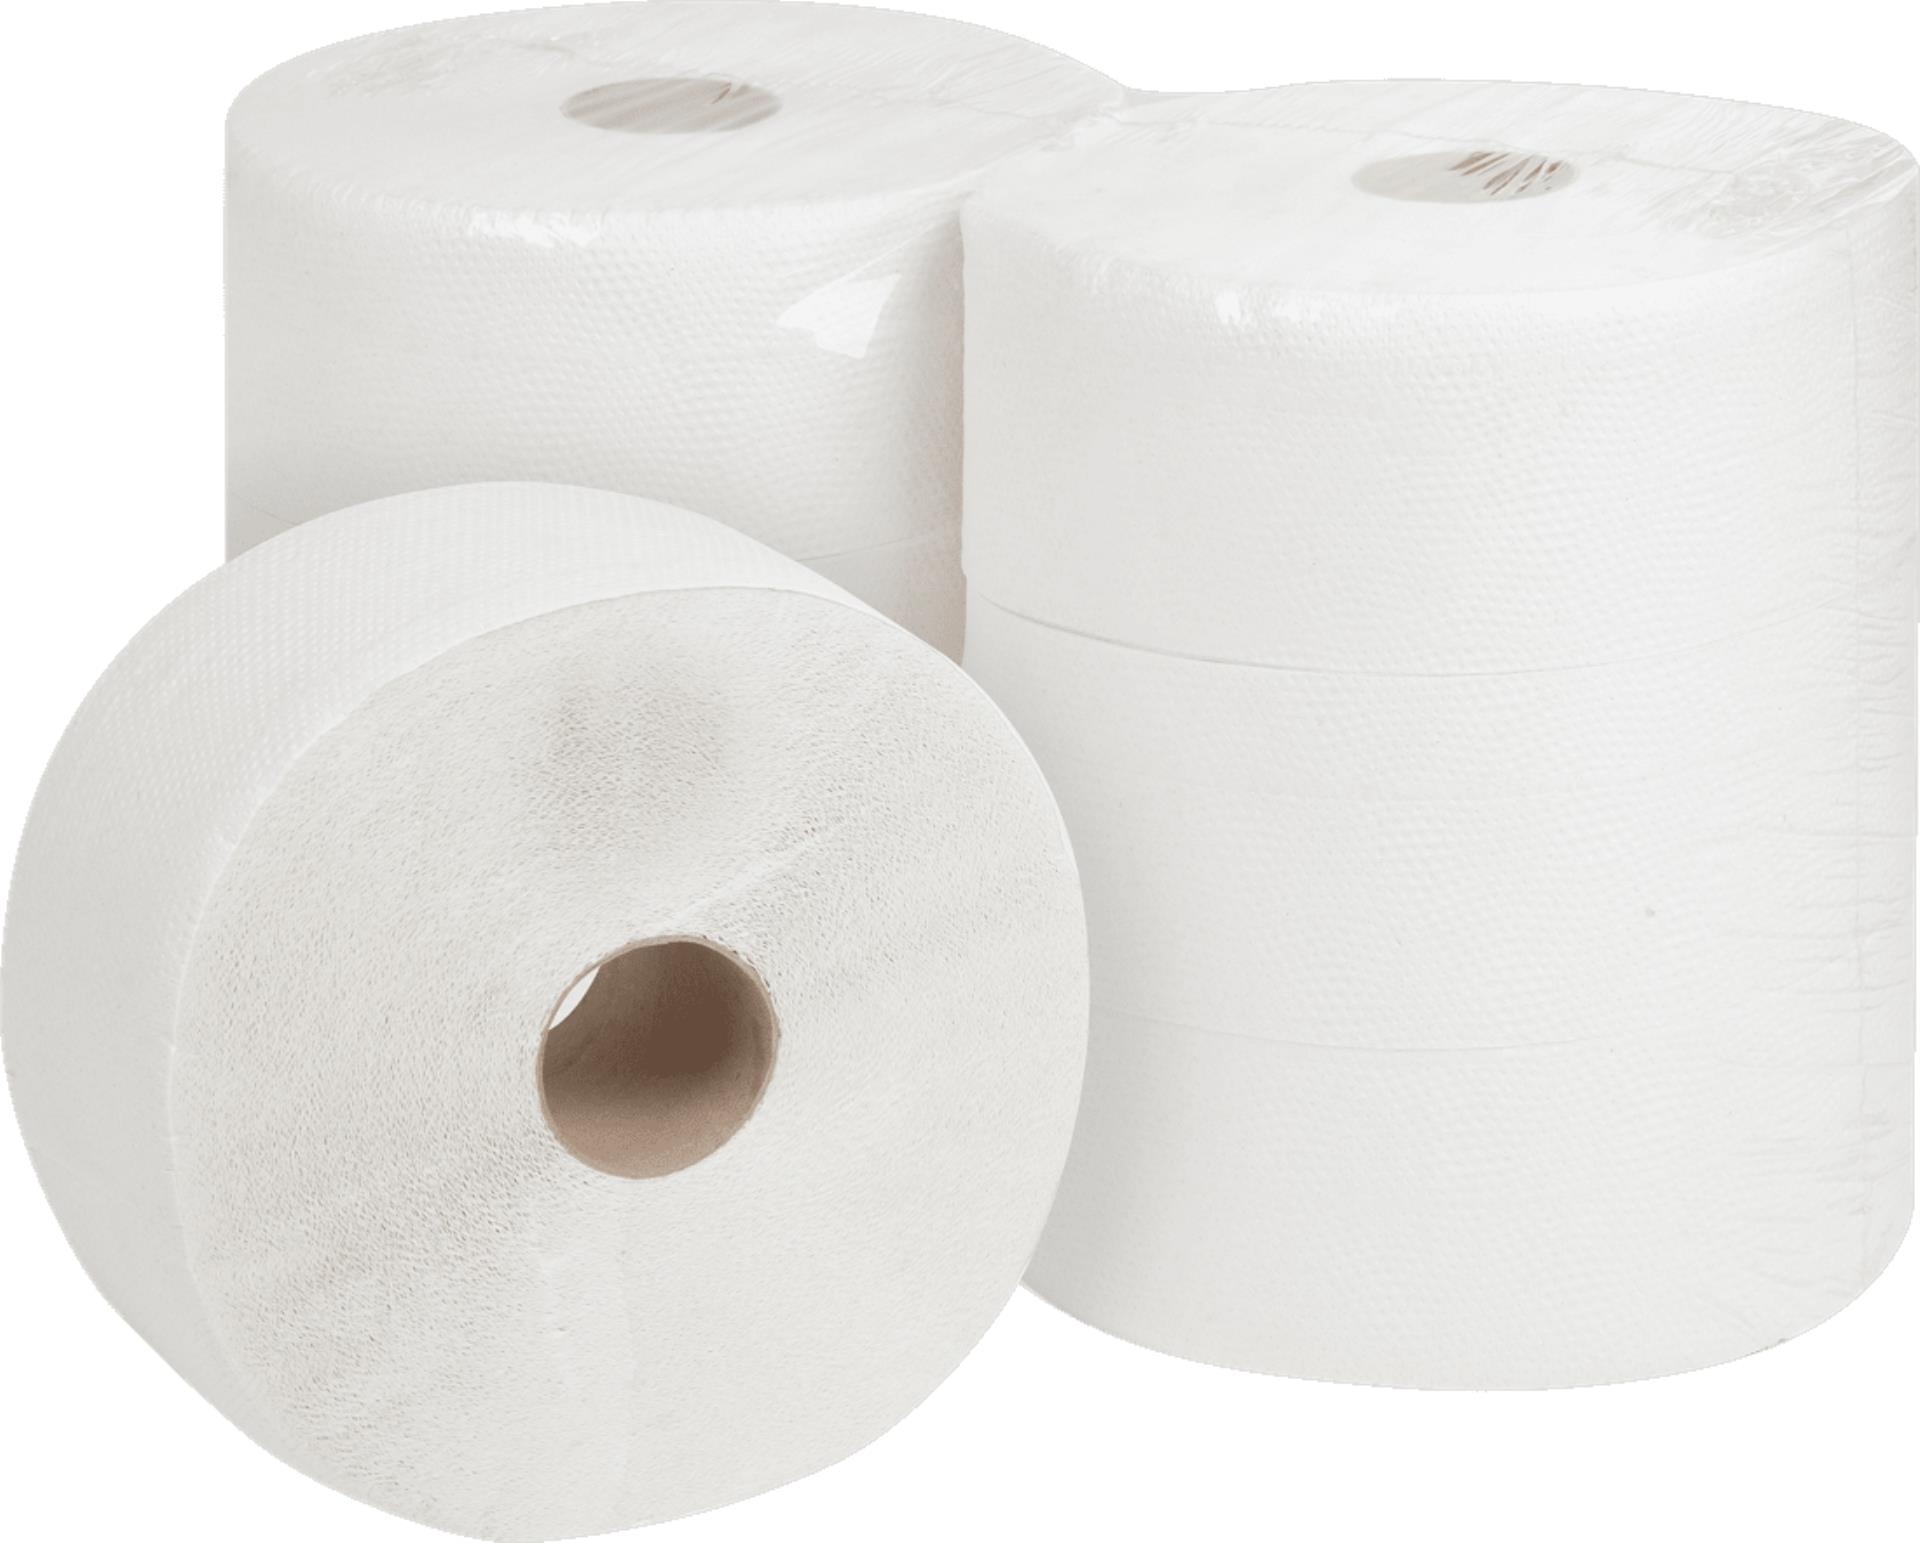 Toaletní papír Jumbo - dvouvrstvý, průměr 24 cm, 6 rolí